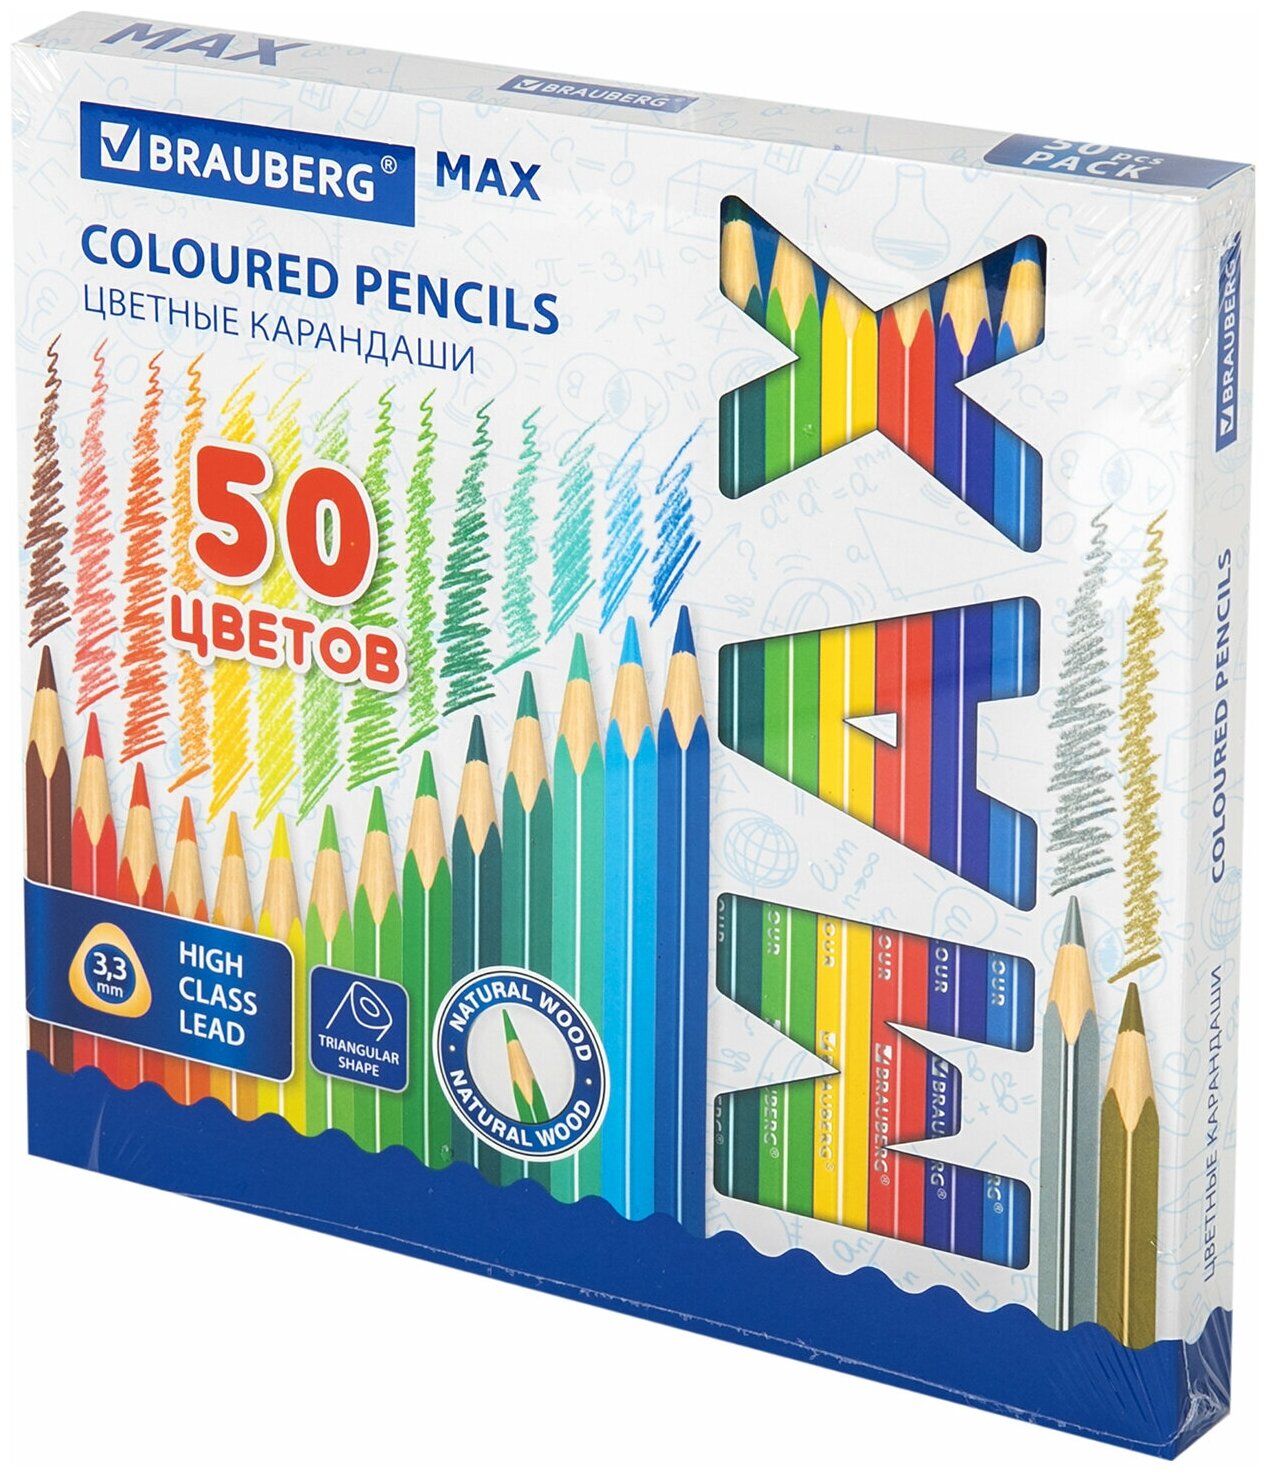 Комплект 3 шт Карандаши цветные супермягкие яркие трехгранные BRAUBERG MAX 50 цветов грифель мягкий 3.3 мм 181860